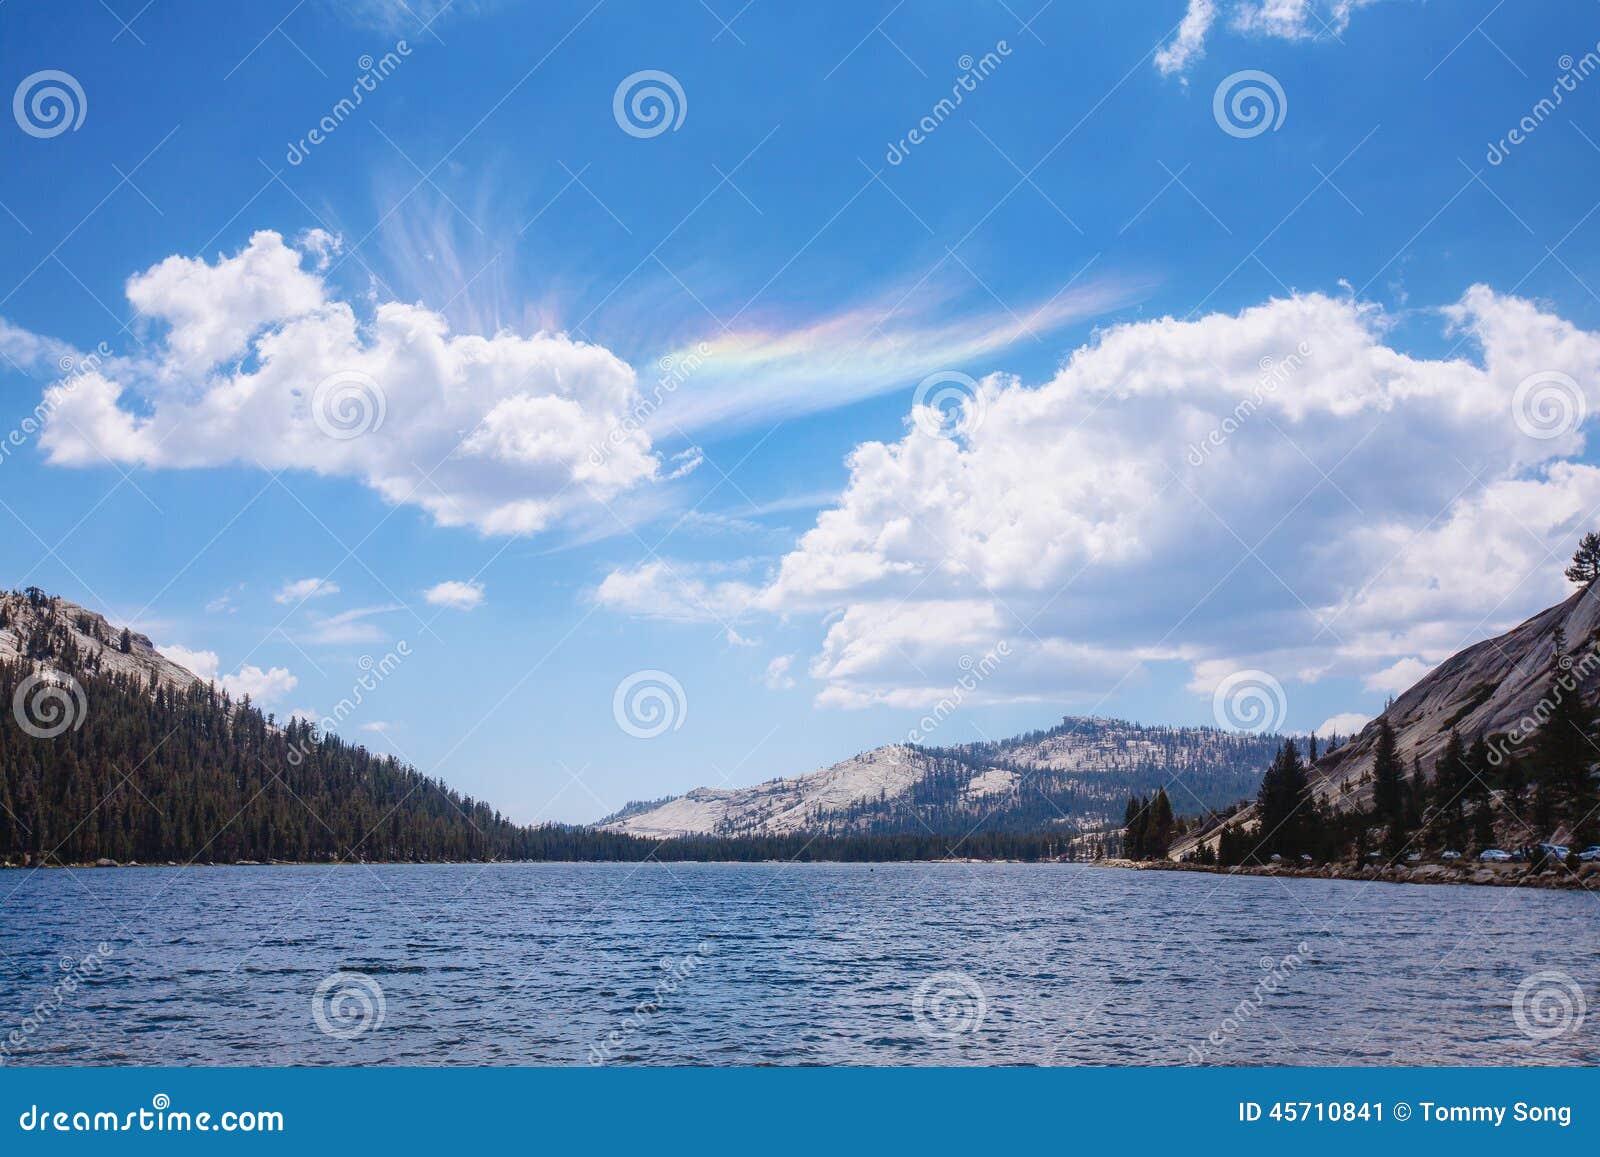 Tenaya jezioro z okulistycznymi zjawiskami w niebie (horyzontalnym)